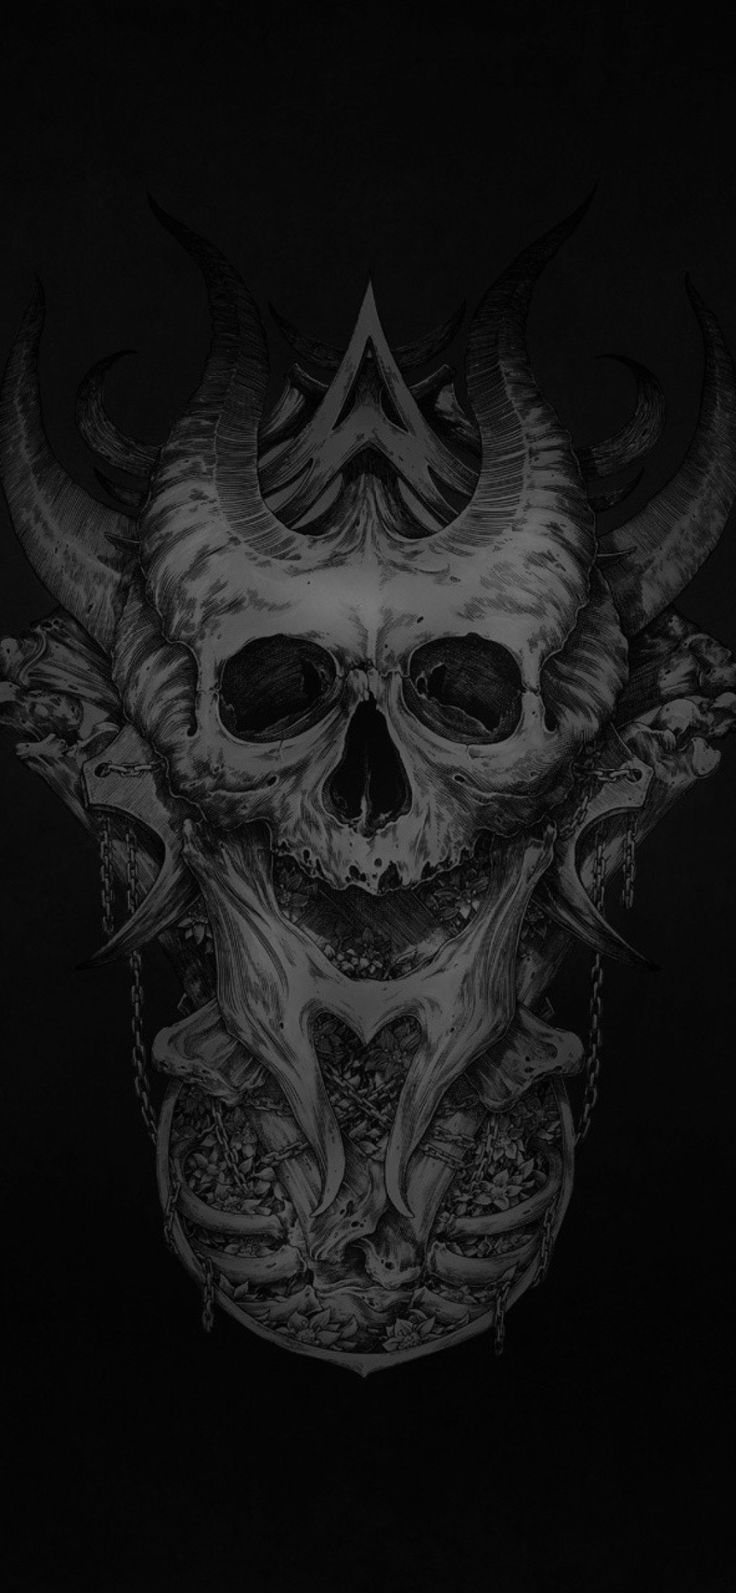 Dark skull skull wallpaper black skulls wallpaper hd skull wallpapers